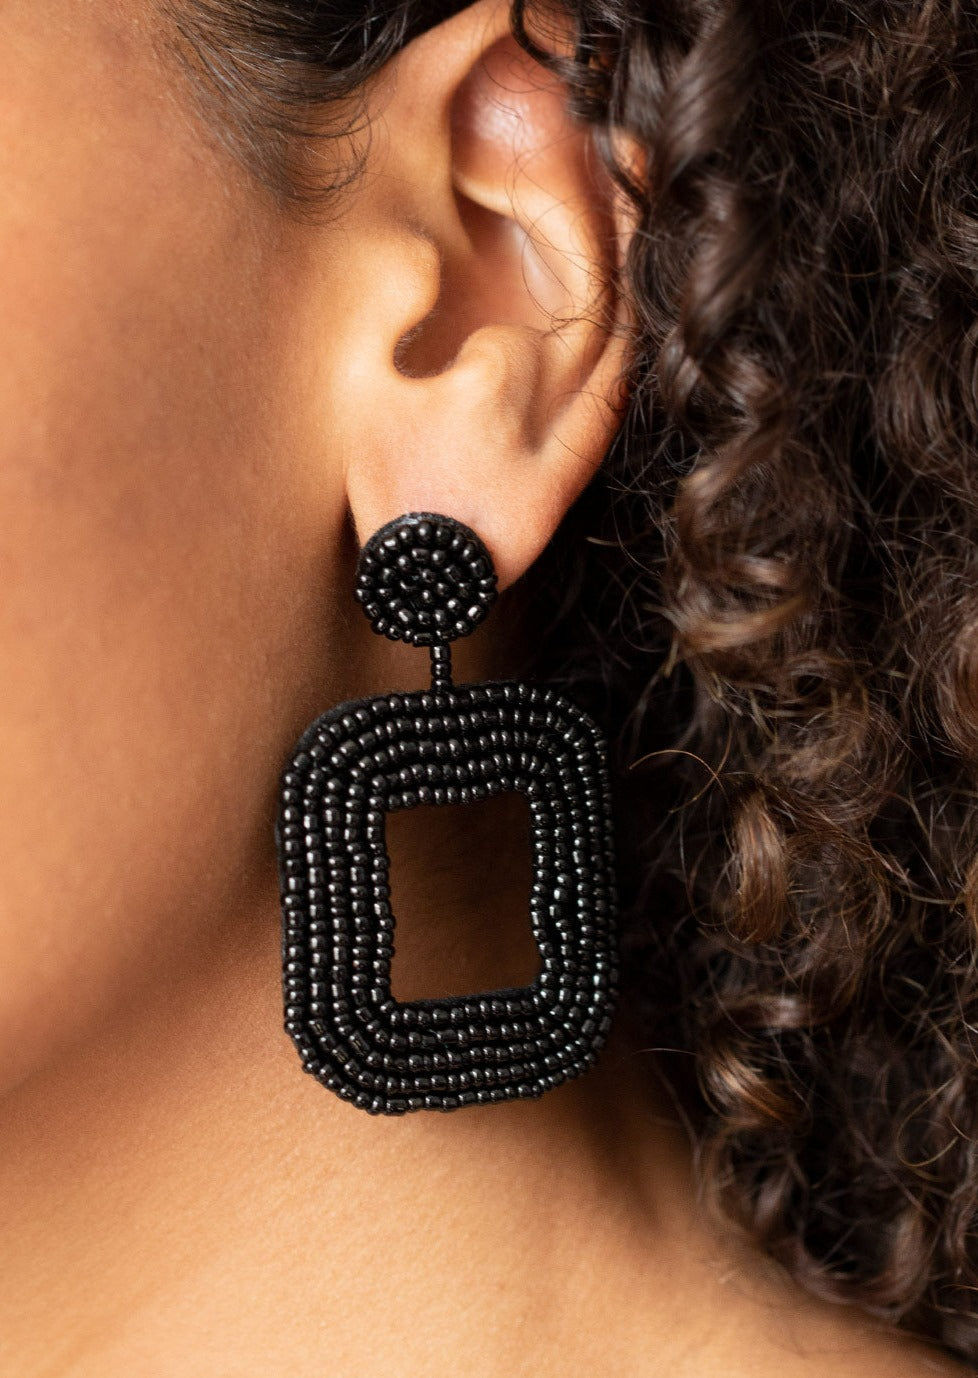 Beaded Square Earrings | Black